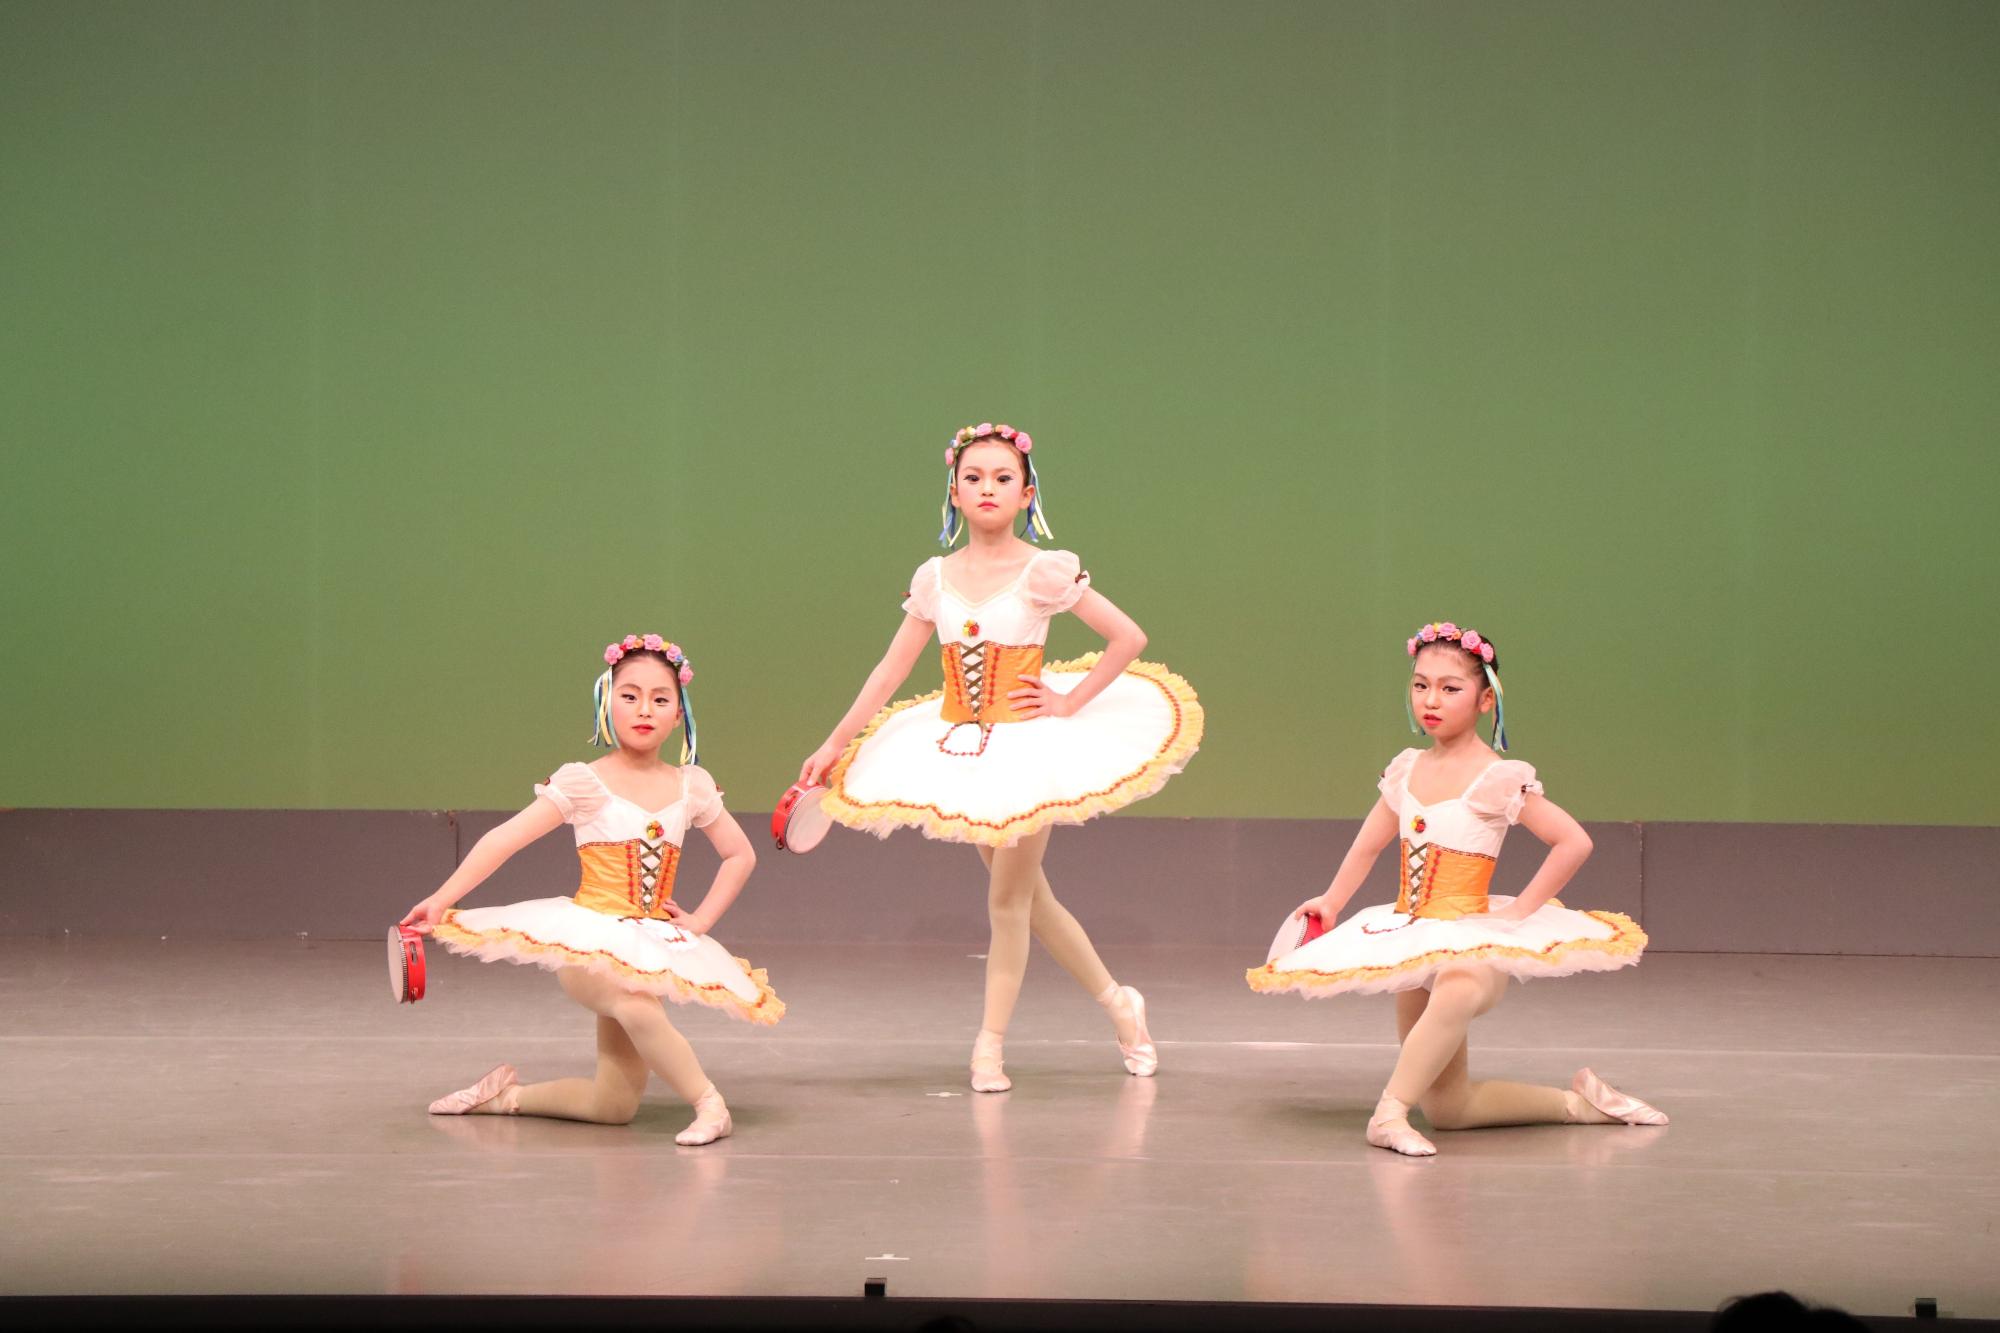 発表会で3人がバレエを踊っている写真